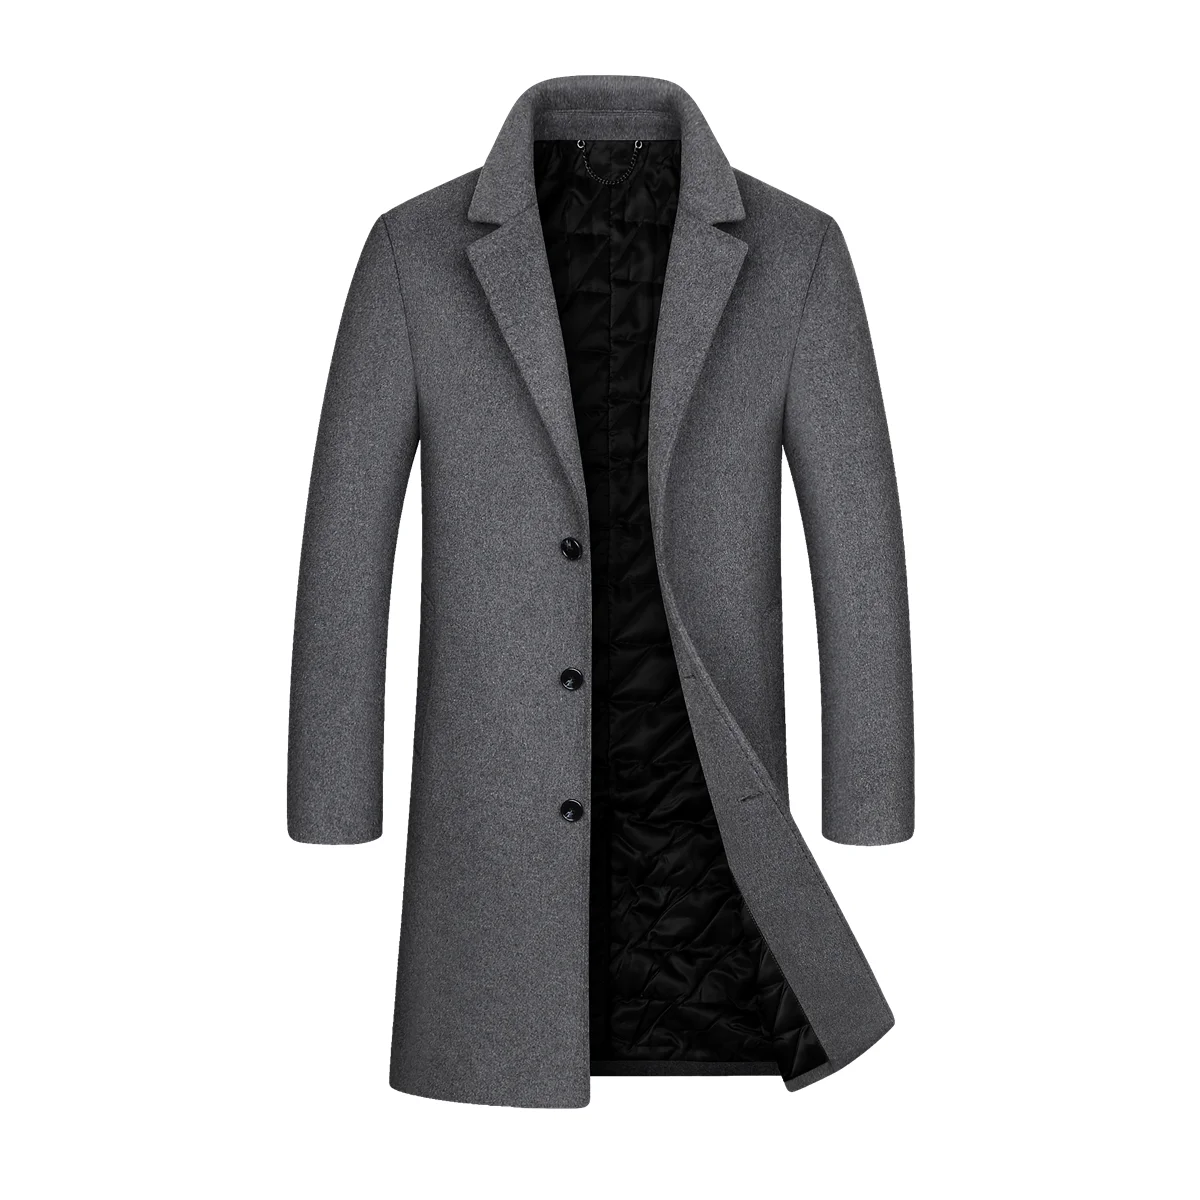 Зимняя мужская одежда, мужская ветровка, мужское твидовое пальто, шерстяное твидовое пальто с лацканами для мужчин, твидовое пальто для мужчин, ветровка для мужчин, мужская одежда